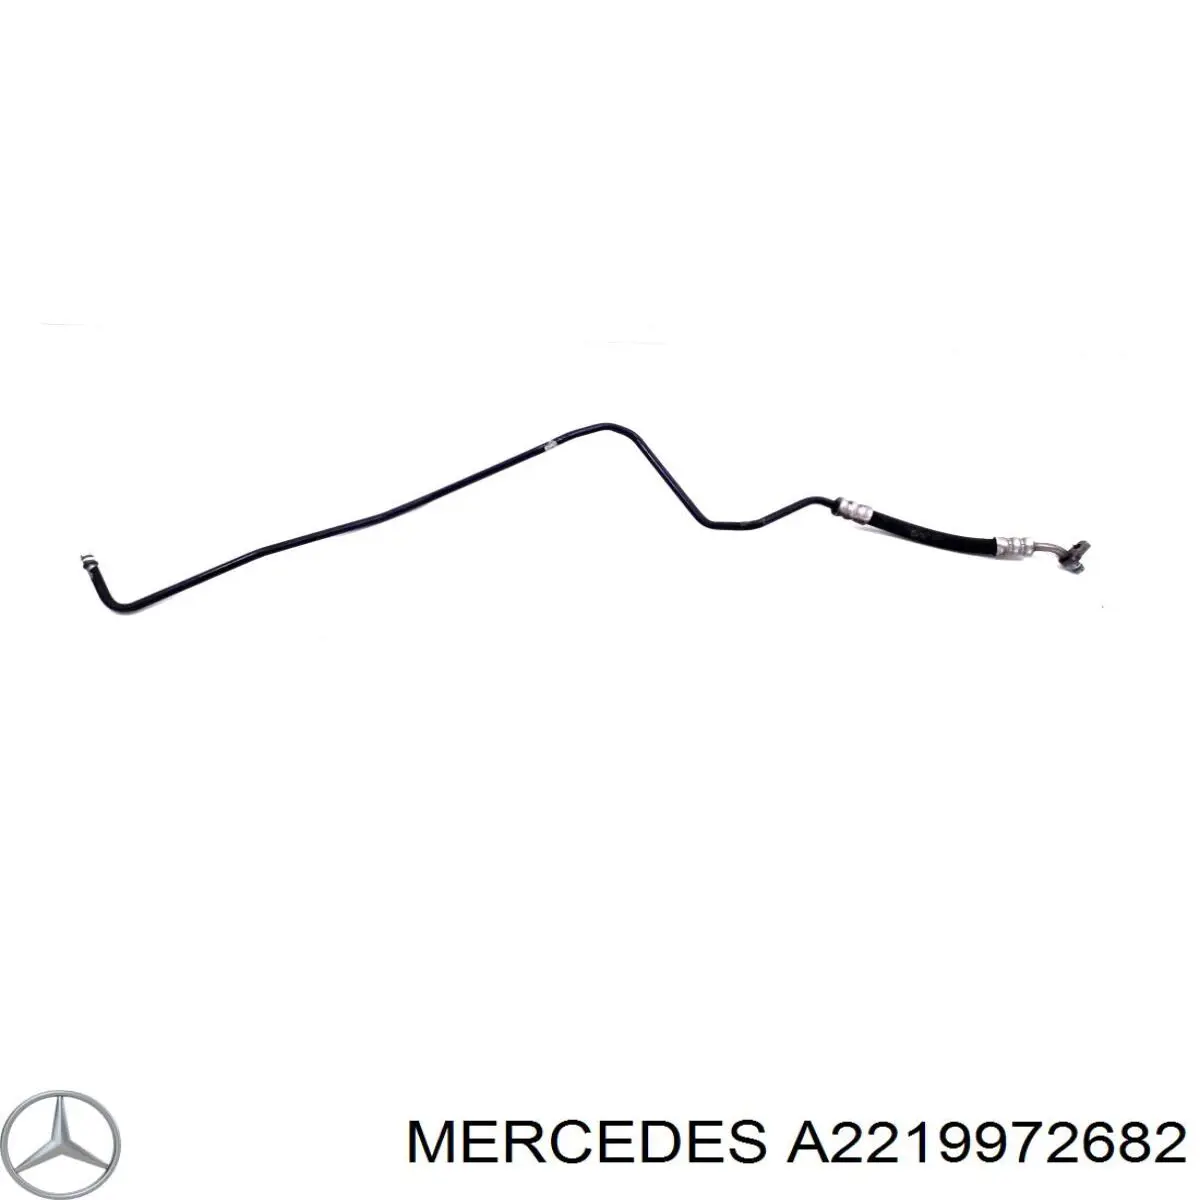 Шланг ГУР, низкого давления, от рейки/механизма к радиатору на Mercedes S (W221)